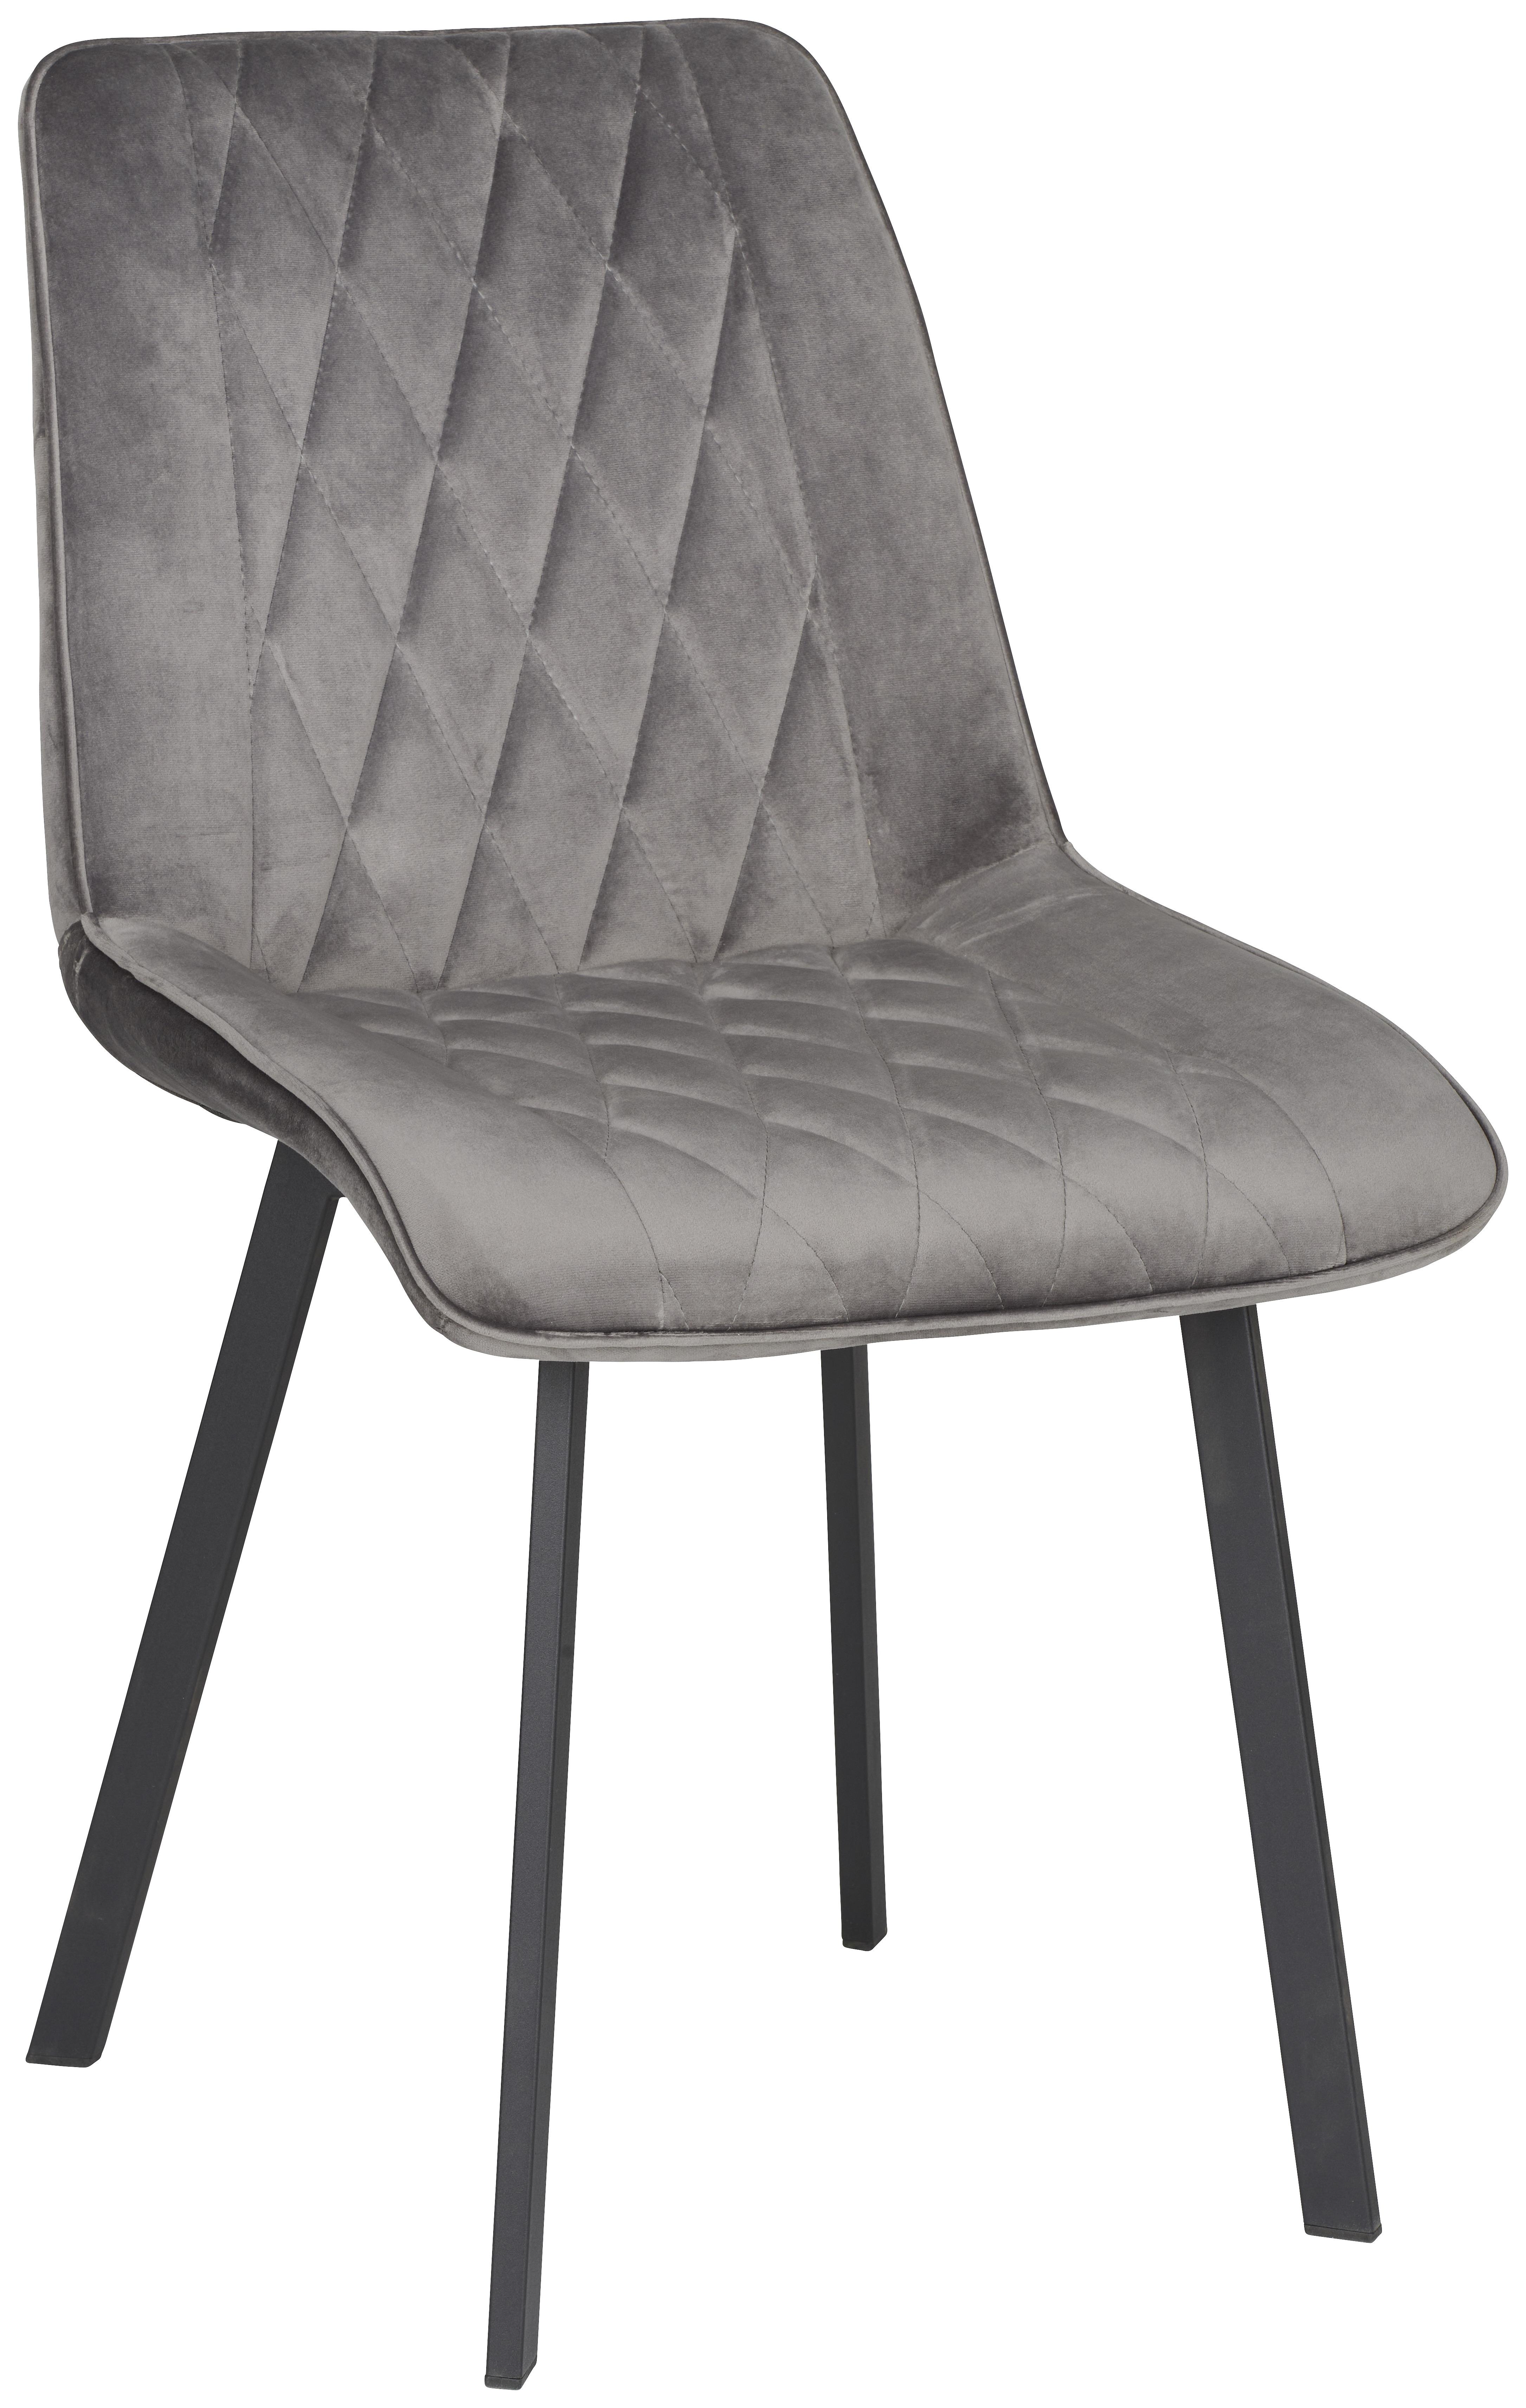 Čtyřnohá Židle Bella - šedá/černá, Konvenční, kov/dřevo (51/87/62cm)